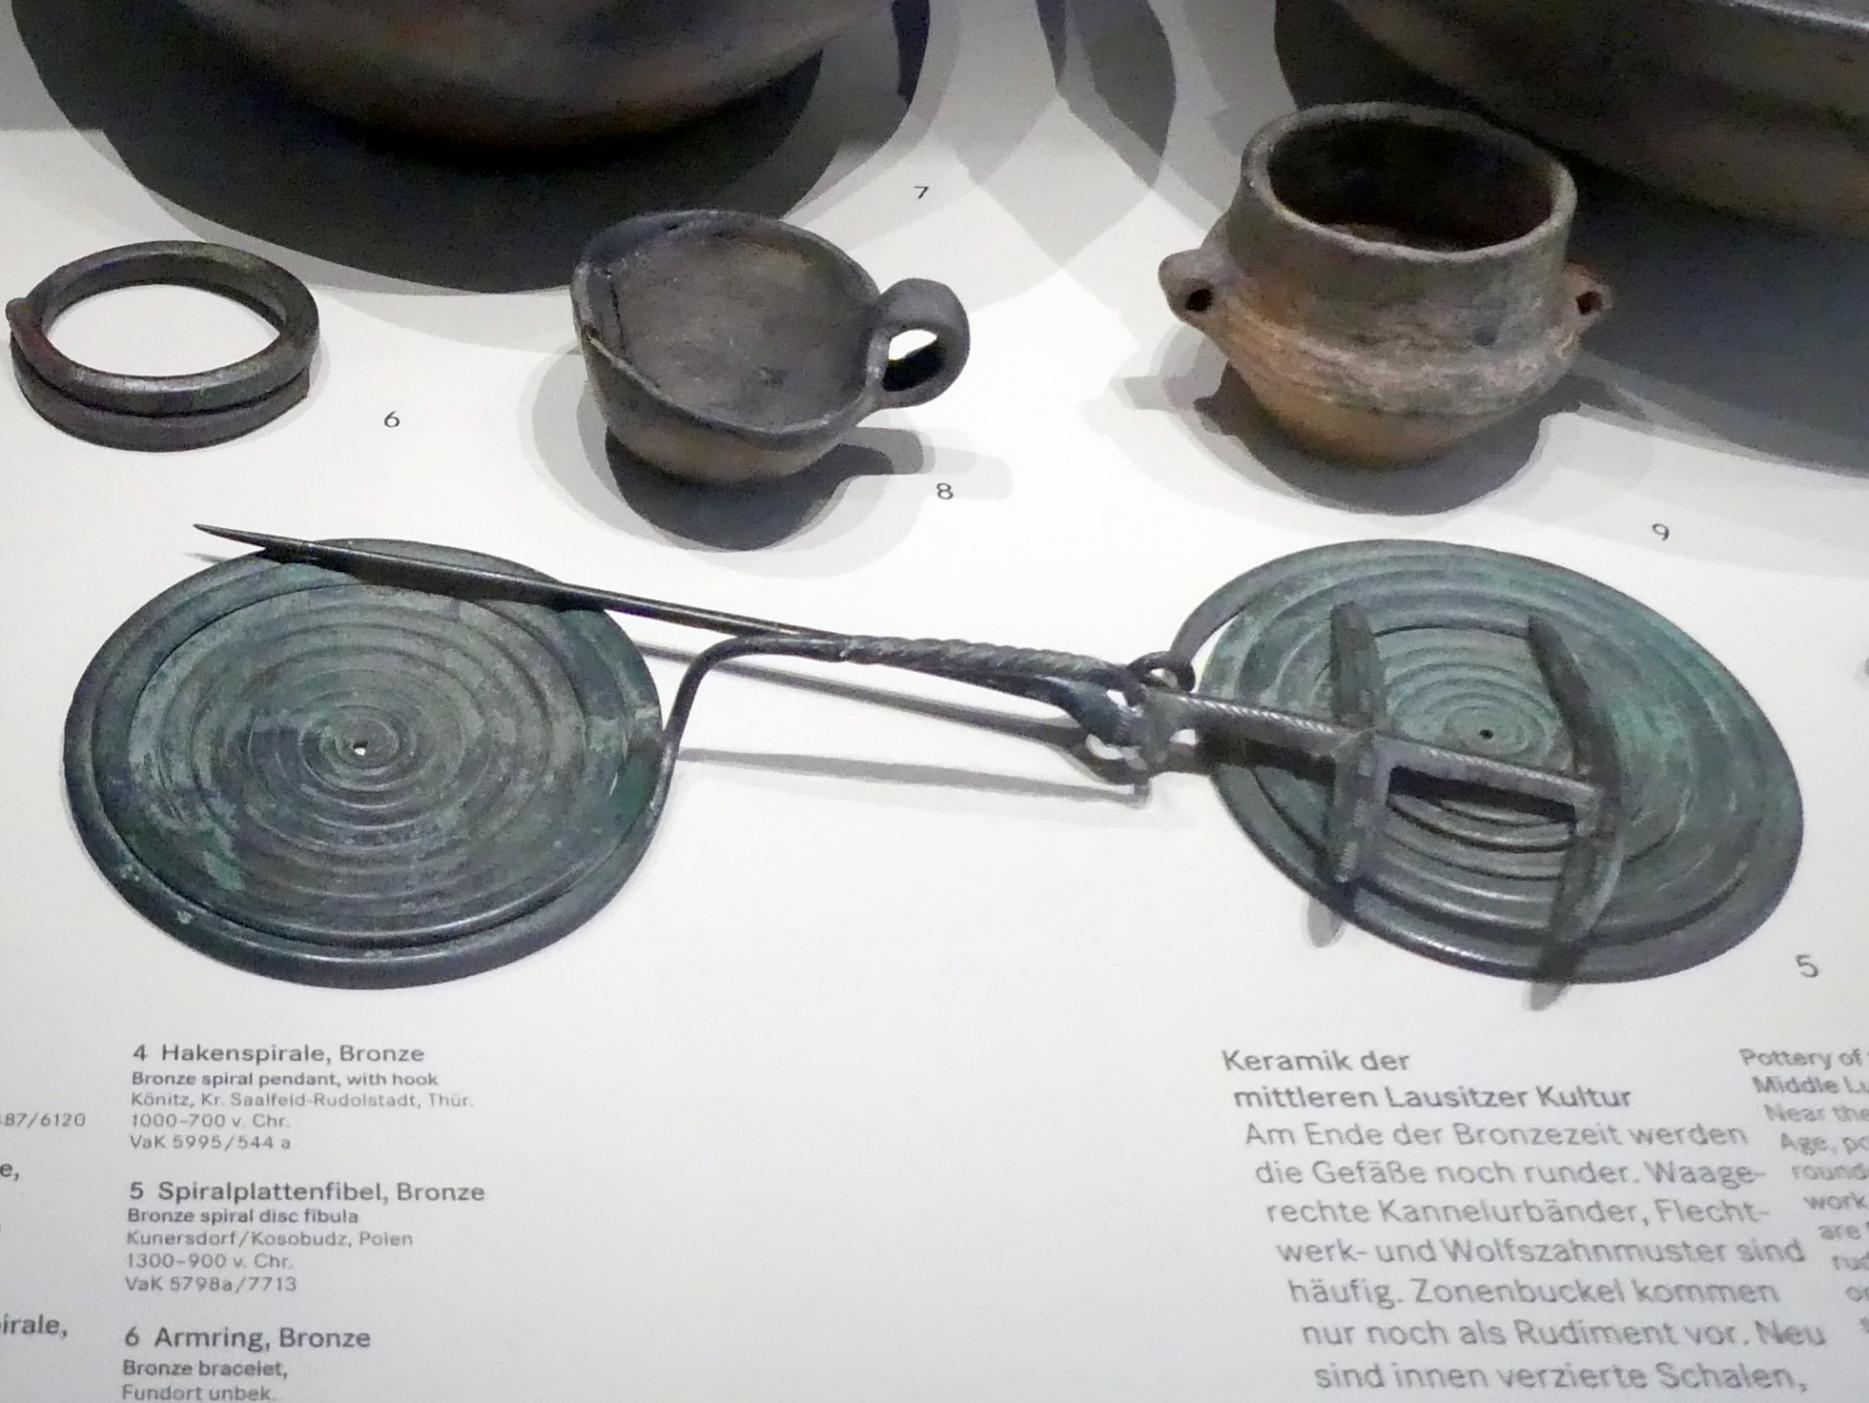 Spiralplattenfibel, 1300 - 900 v. Chr.